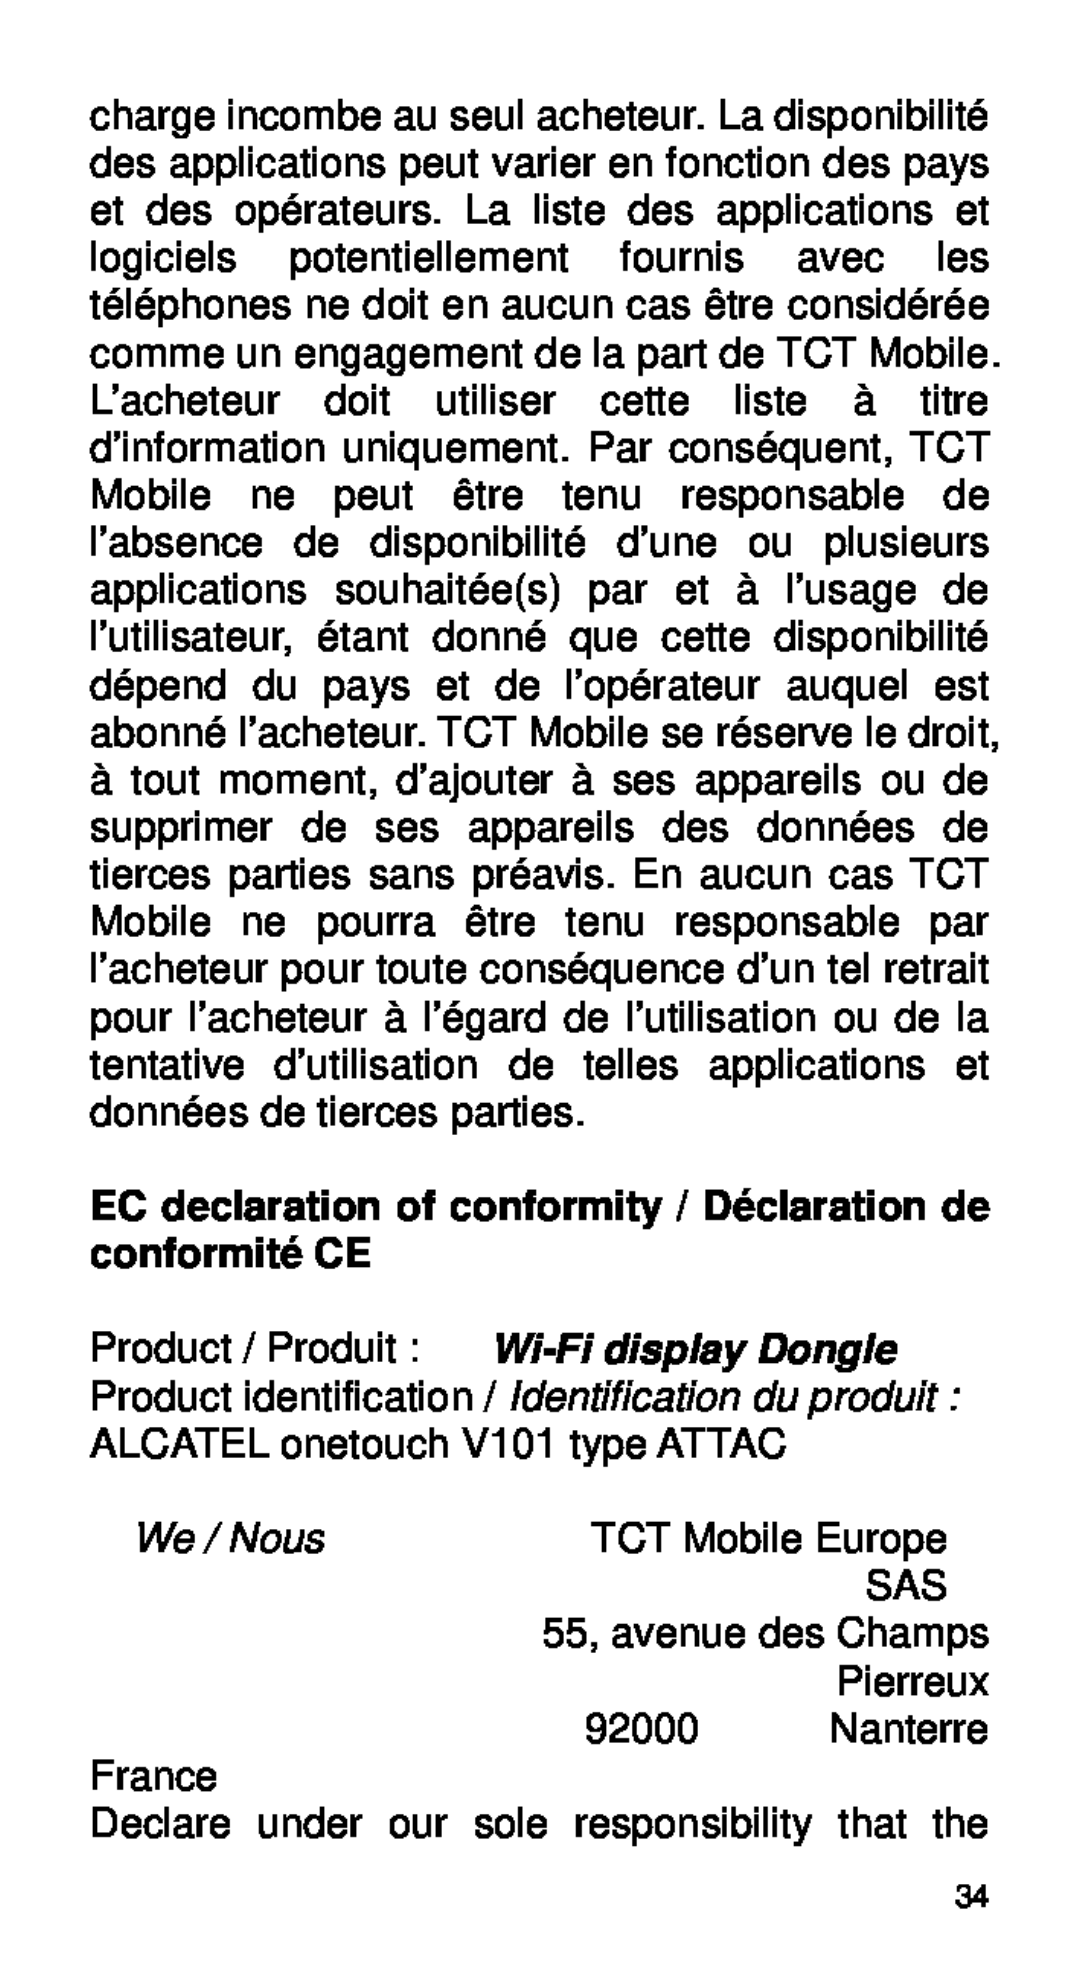 Alcatel Home V101 manual TCT Mobile Europe, 55, avenue des Champs, Pierreux, 92000, Nanterre, We / Nous 